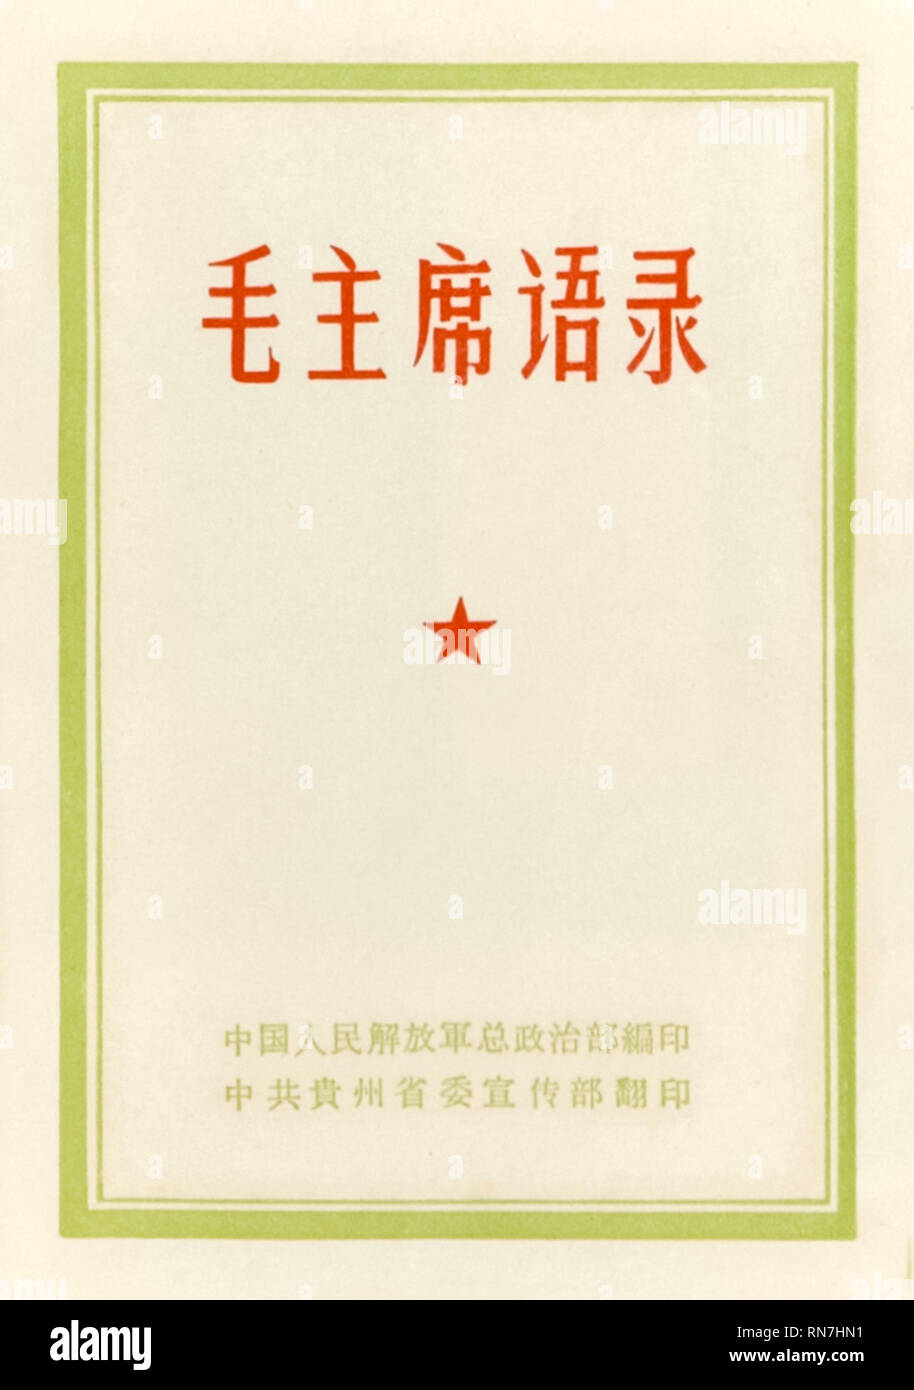 Titel von "Das kleine rote Buch" (Zitate aus den Vorsitzenden Mao Tse-tung), die Erklärungen des Vorsitzenden Mao, Chinesische Kommunistische Revolutionäre und Gründervater der Volksrepublik China, erste Ausgabe 1964 veröffentlicht. Stockfoto